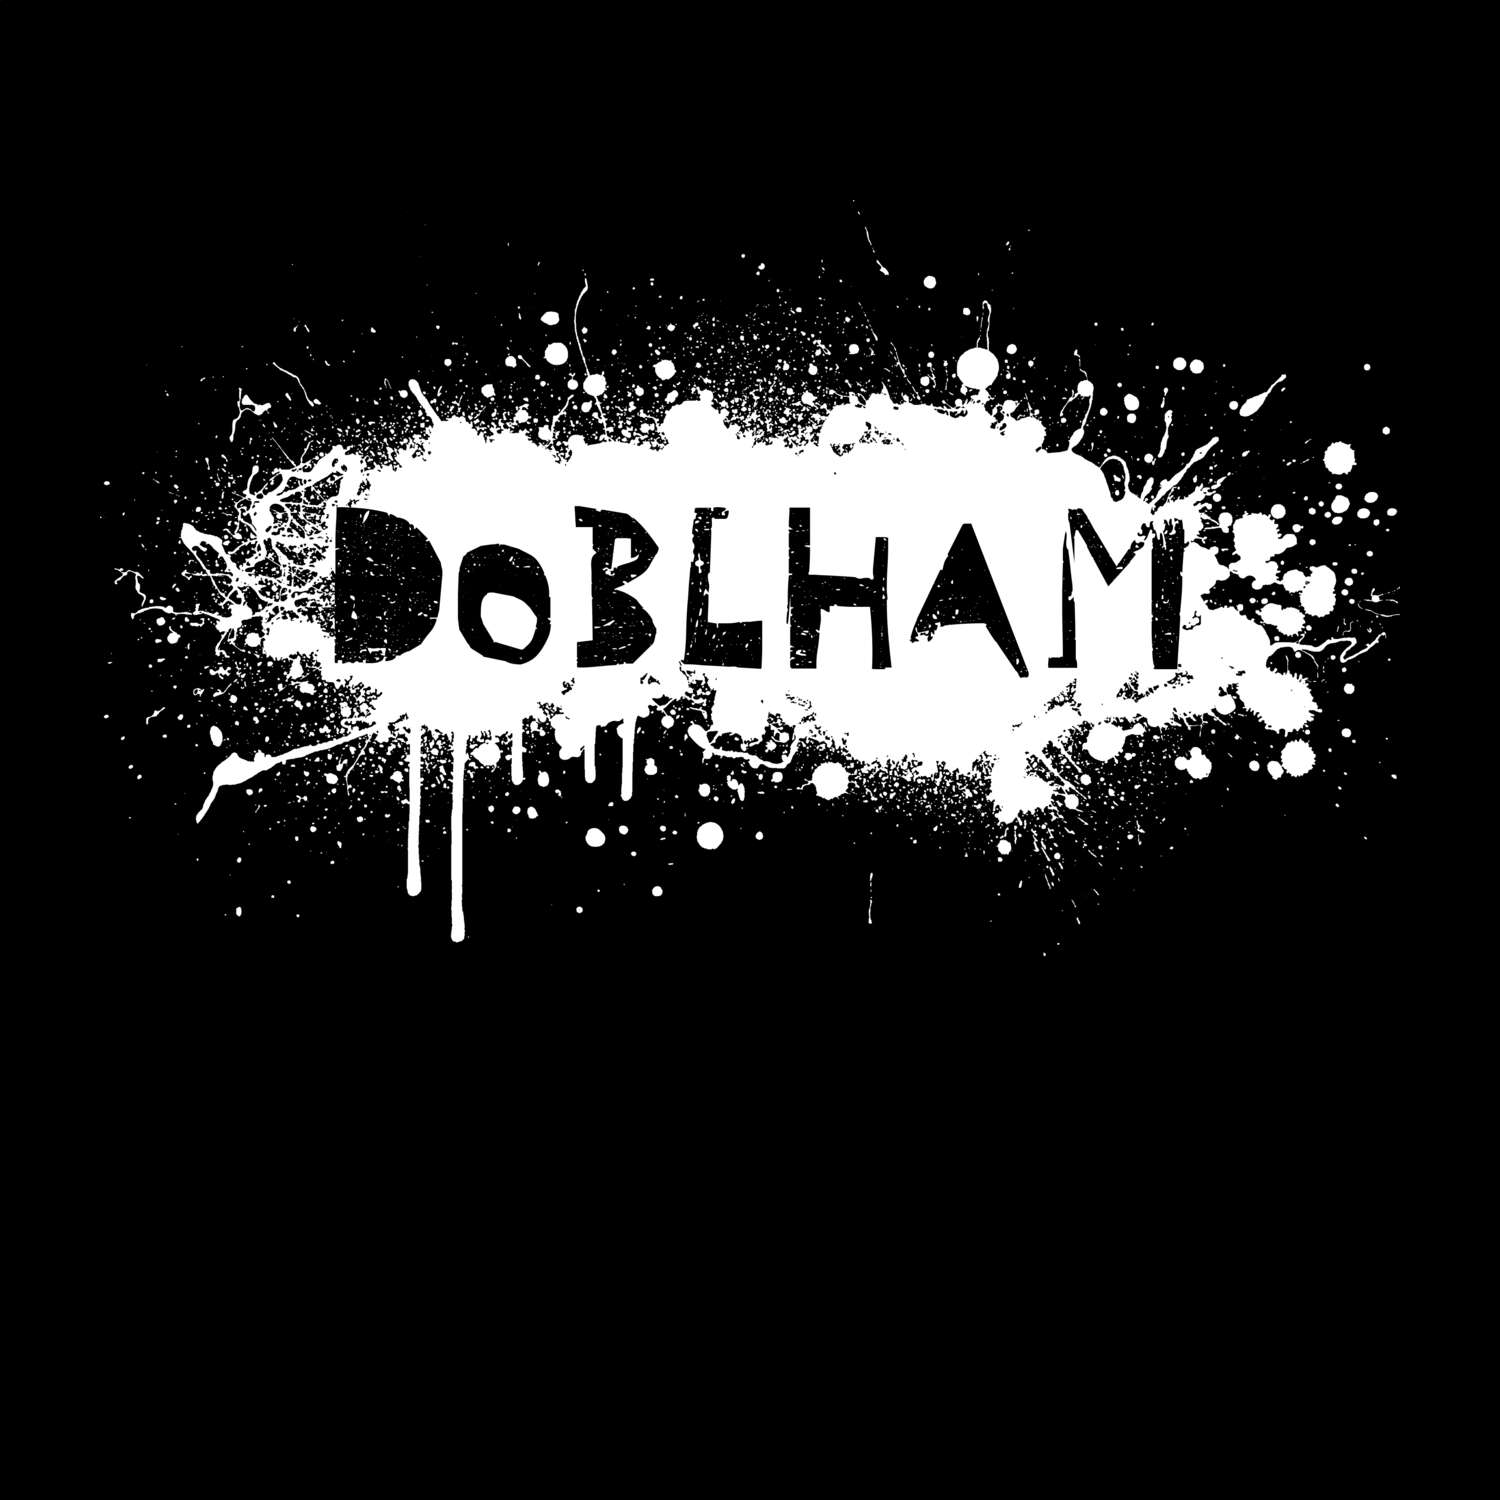 Doblham T-Shirt »Paint Splash Punk«